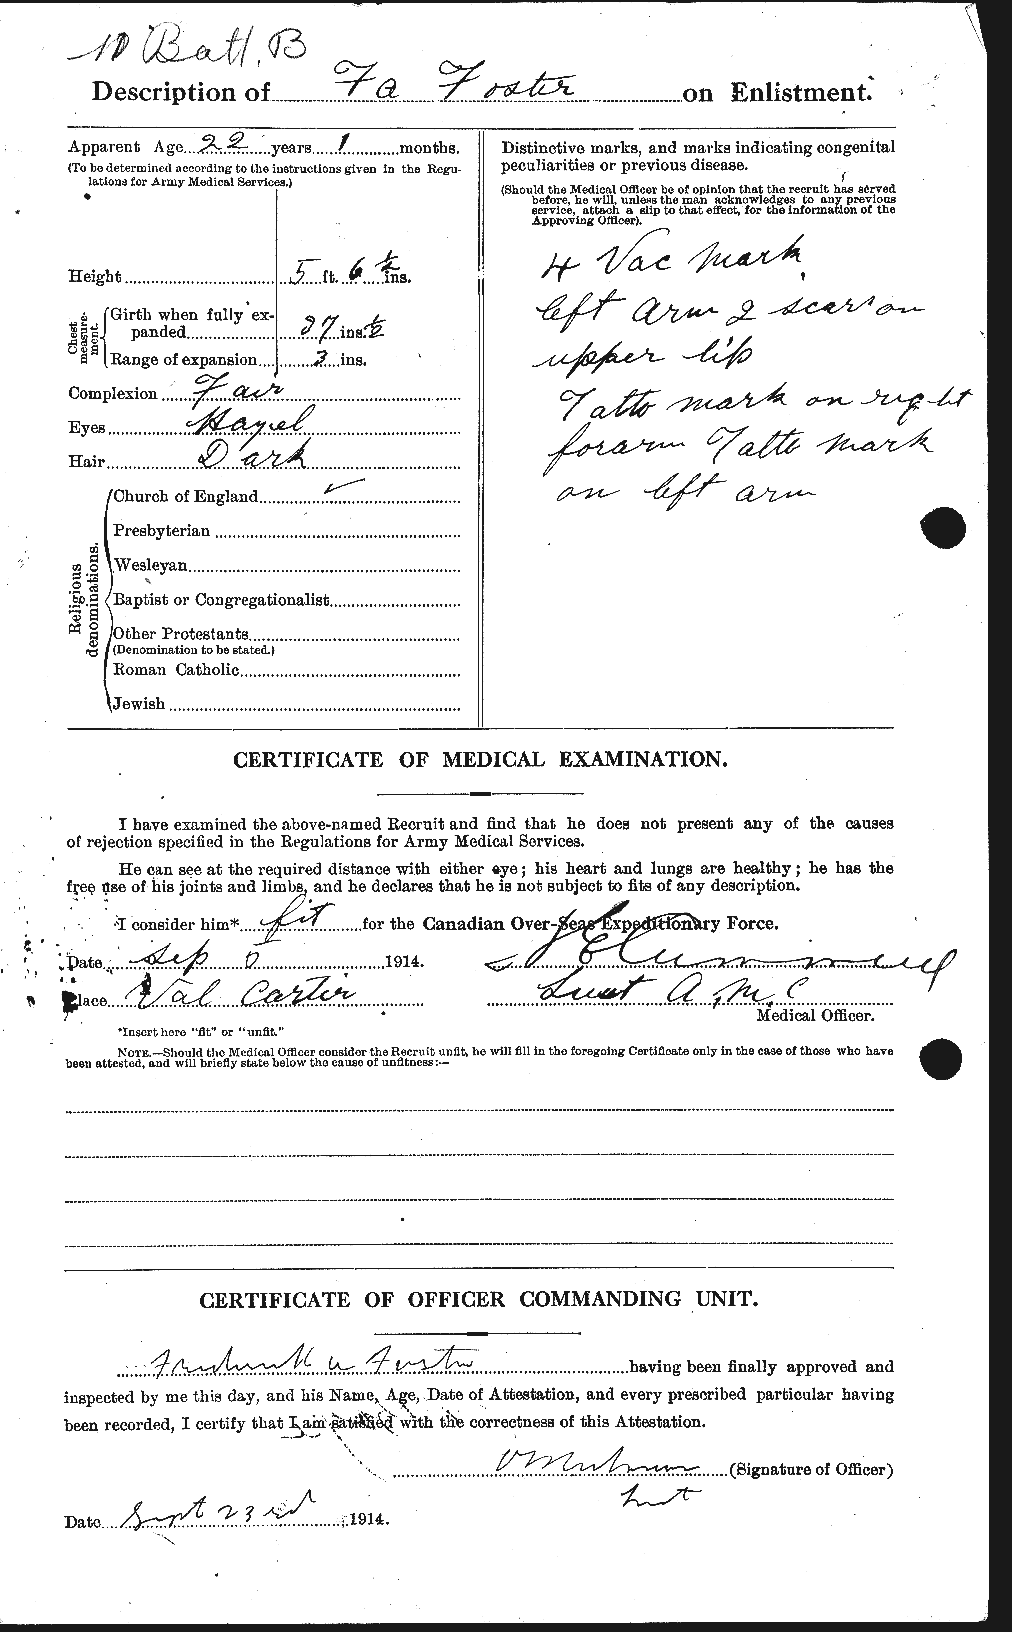 Dossiers du Personnel de la Première Guerre mondiale - CEC 330646b